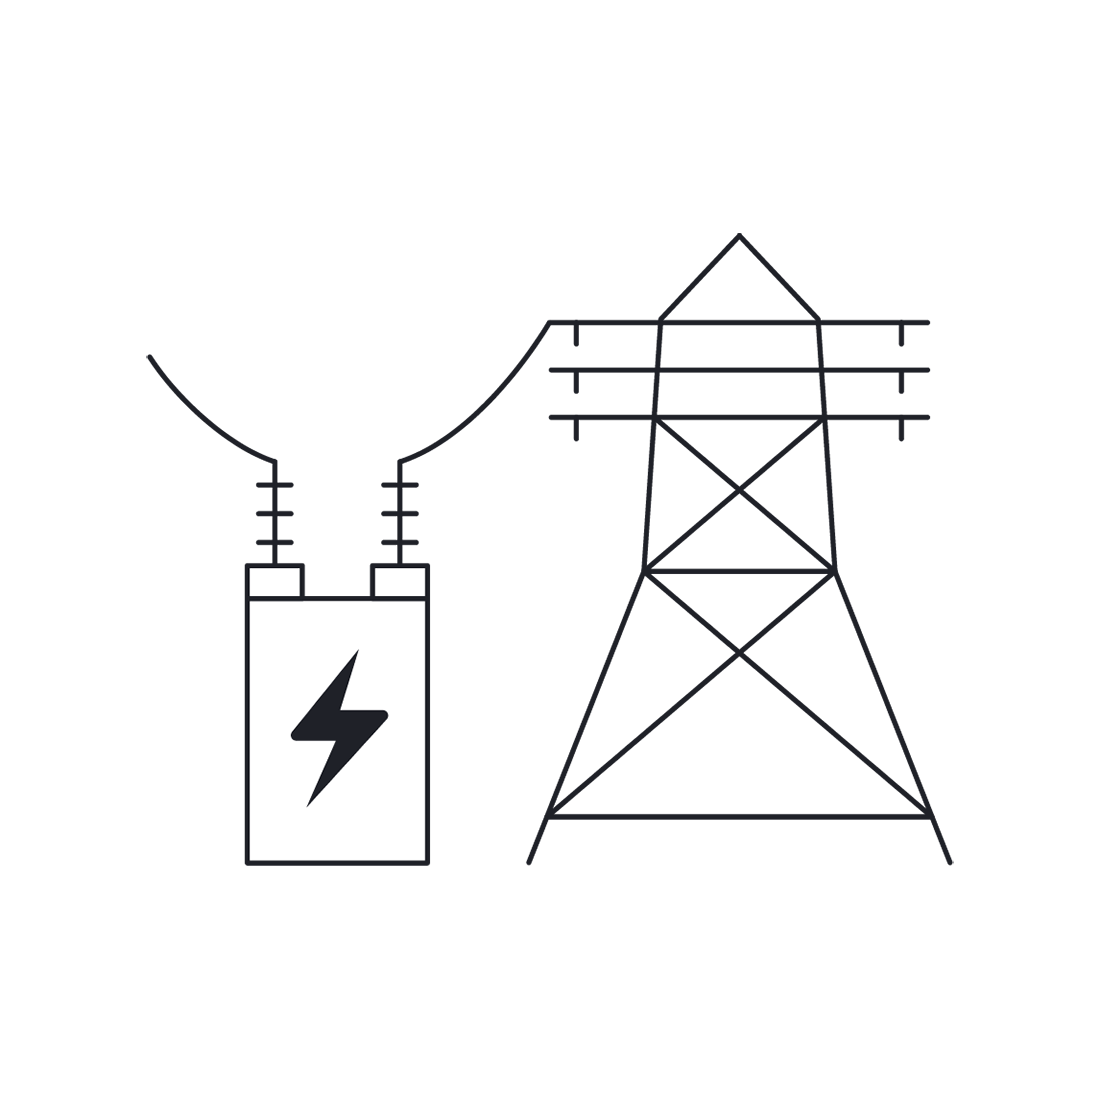 70 Megawatt on site substation